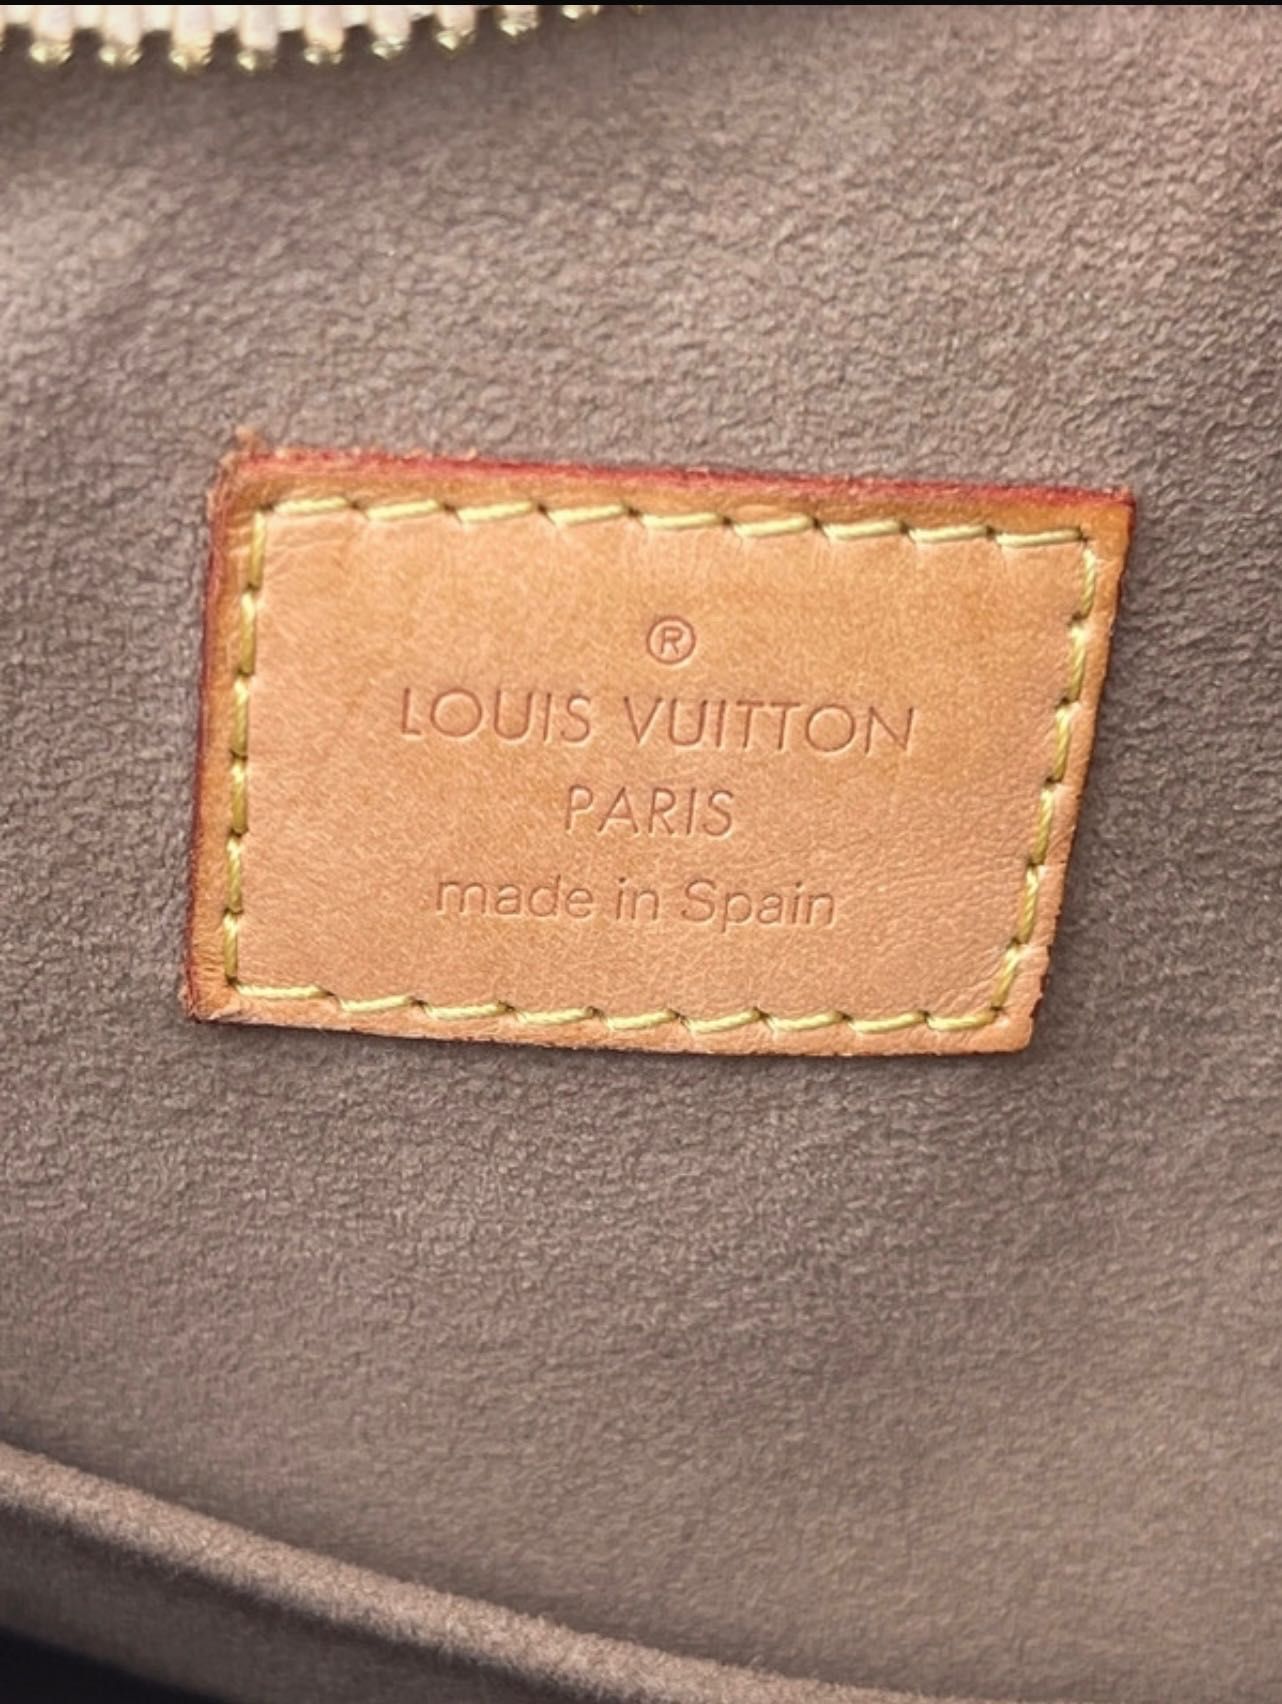 Louis Vuitton bolsa Greta